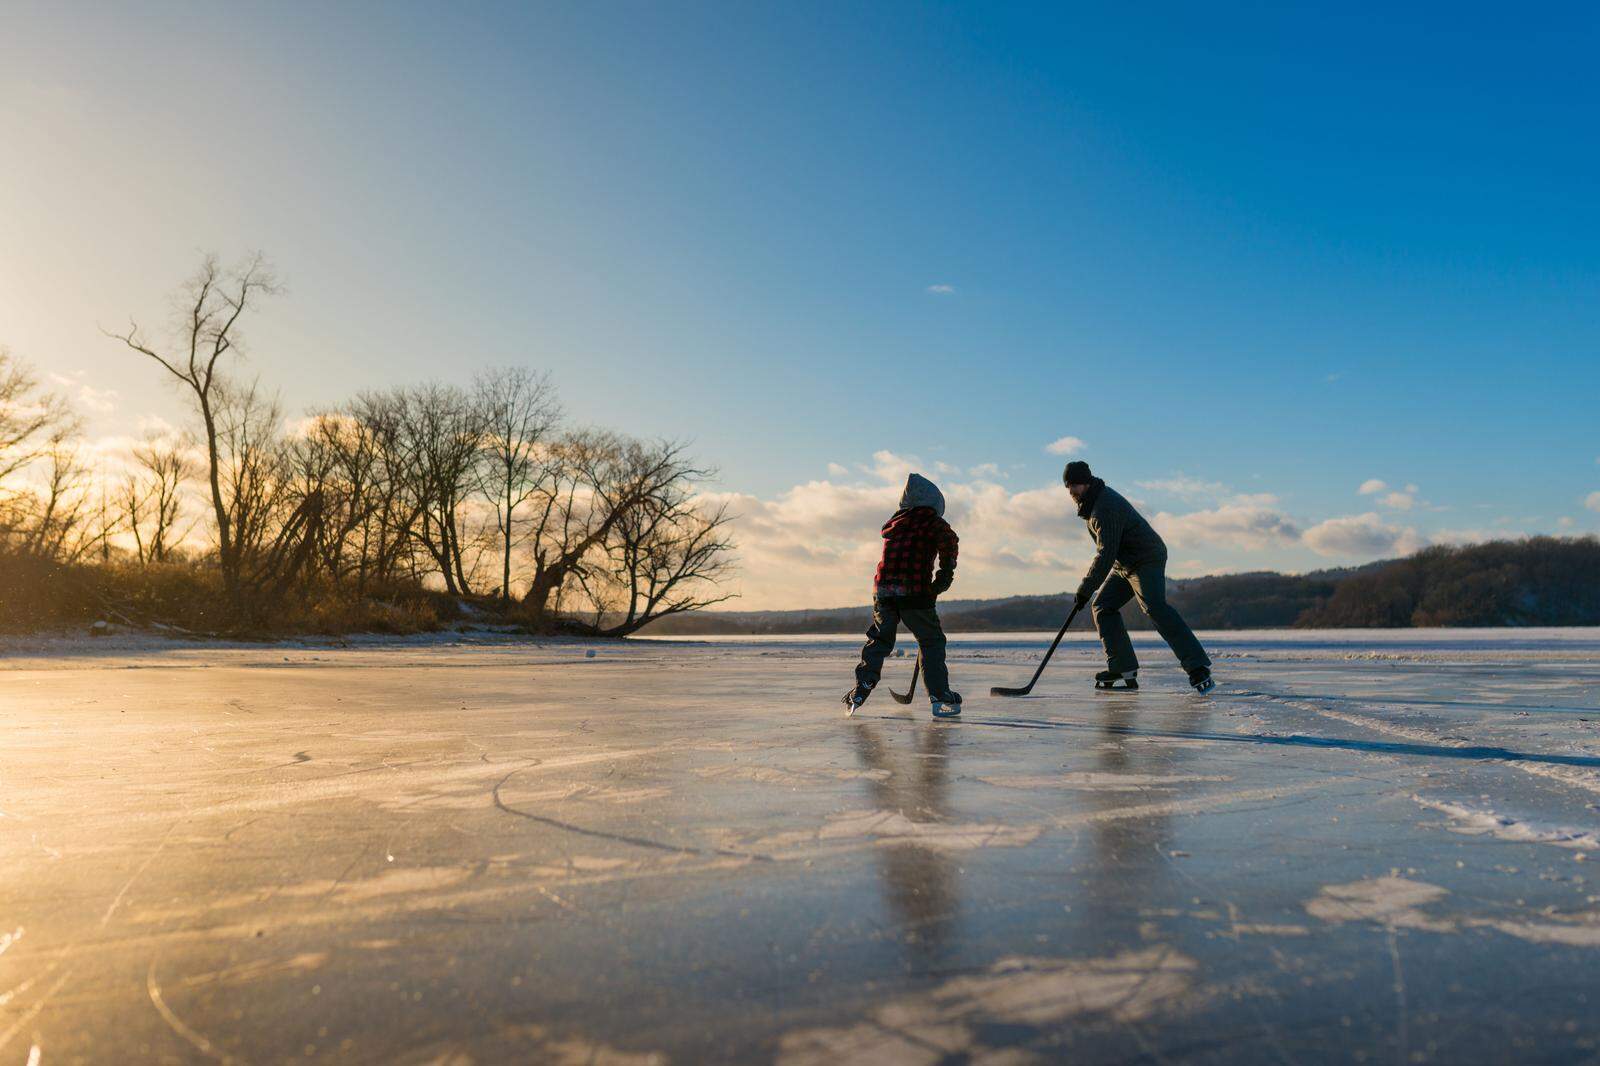 Eishockey auf den finnischen Seen zu spielen zählt zu den ganz besonderen Erlebnissen